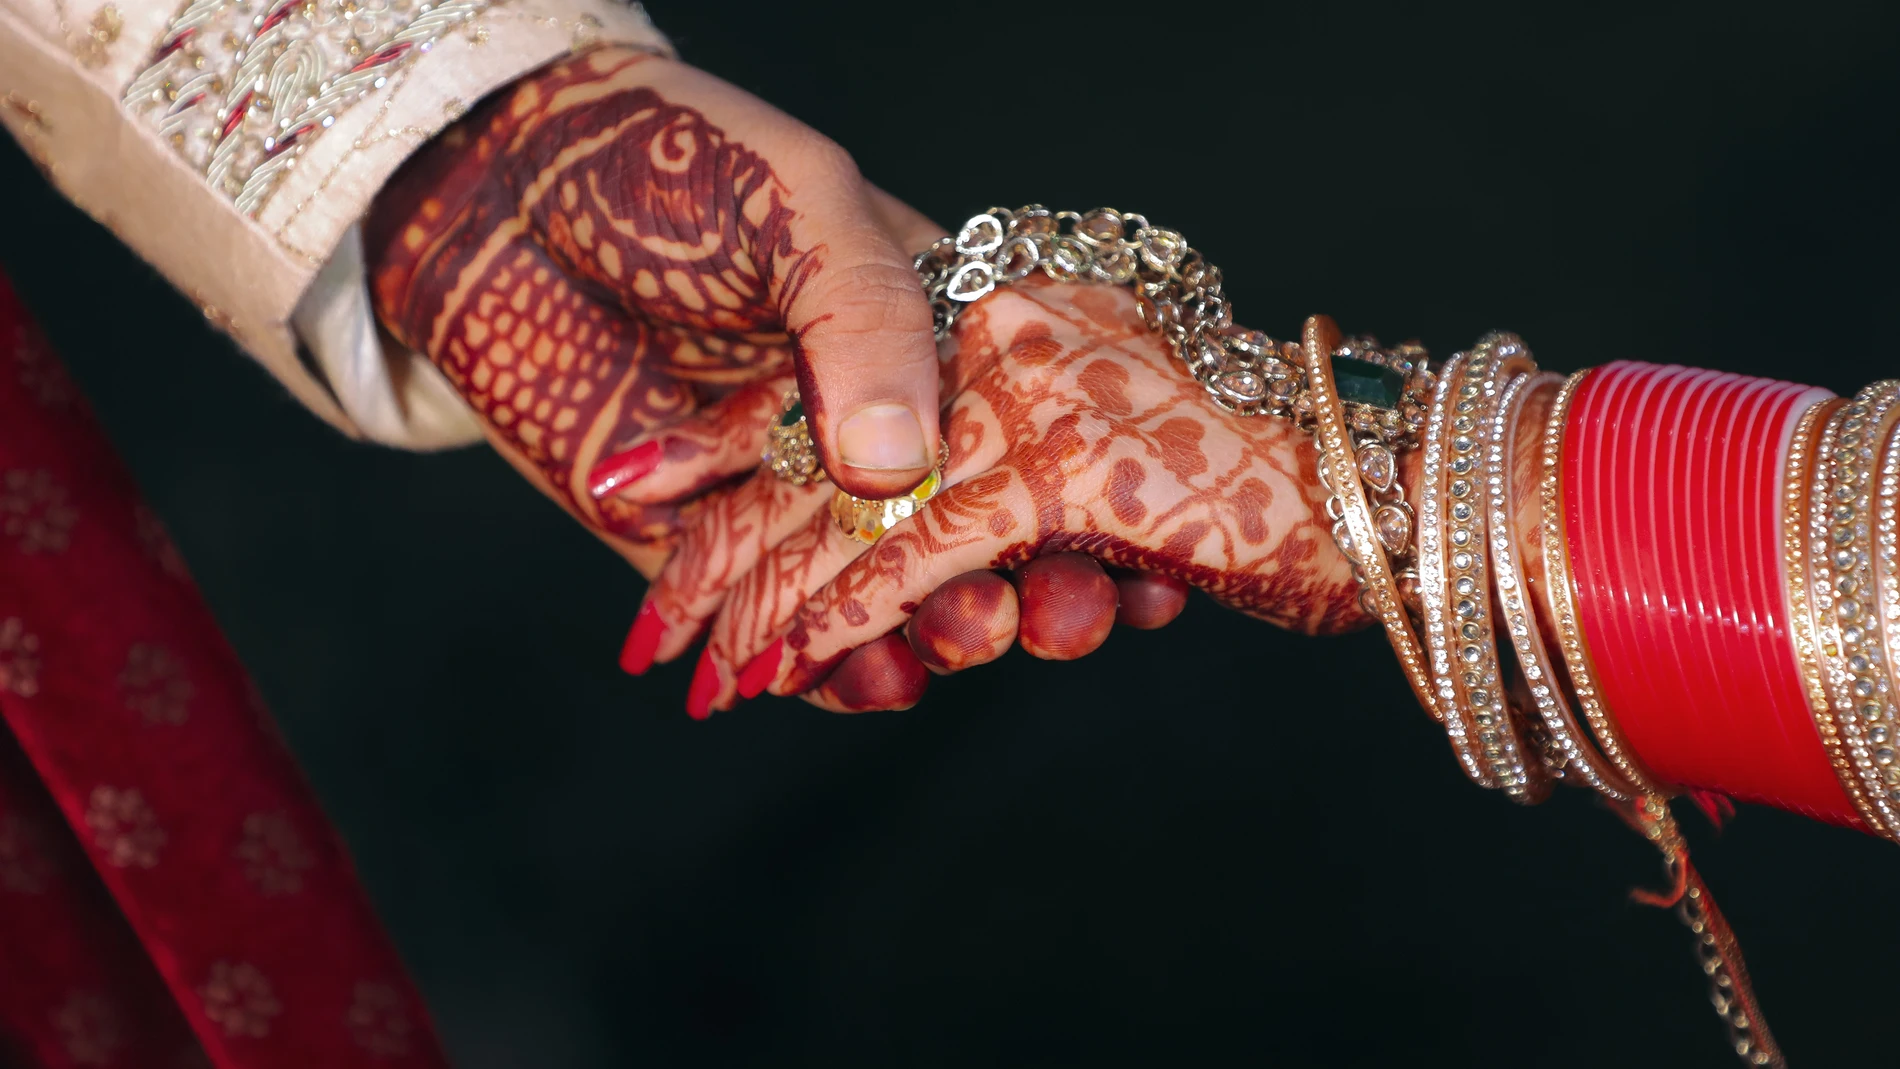 Muere el novio y la novia se encuentra grave tras consumir juntos veneno en su boda en la India